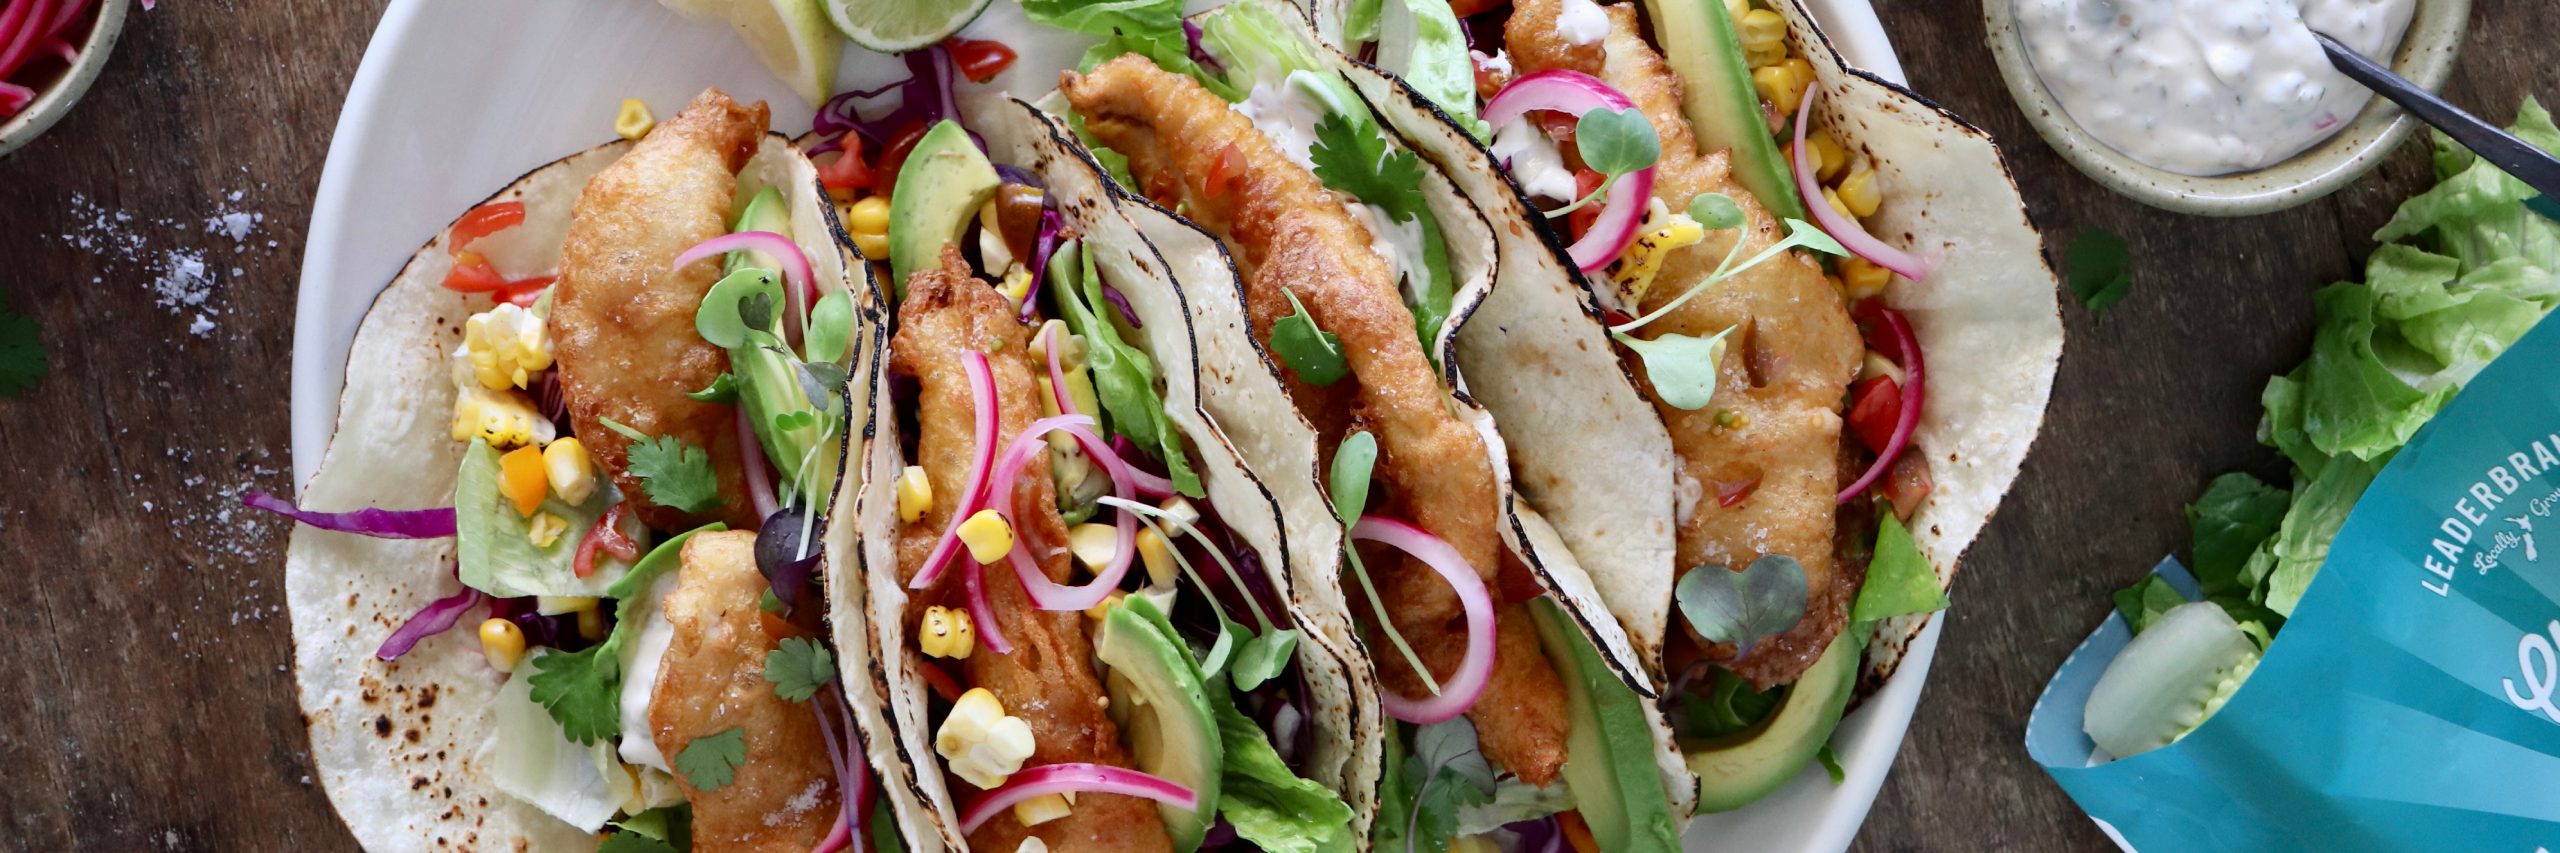 LeaderBrand Fish Taco RECIPE - KITCHEN OF TREATS